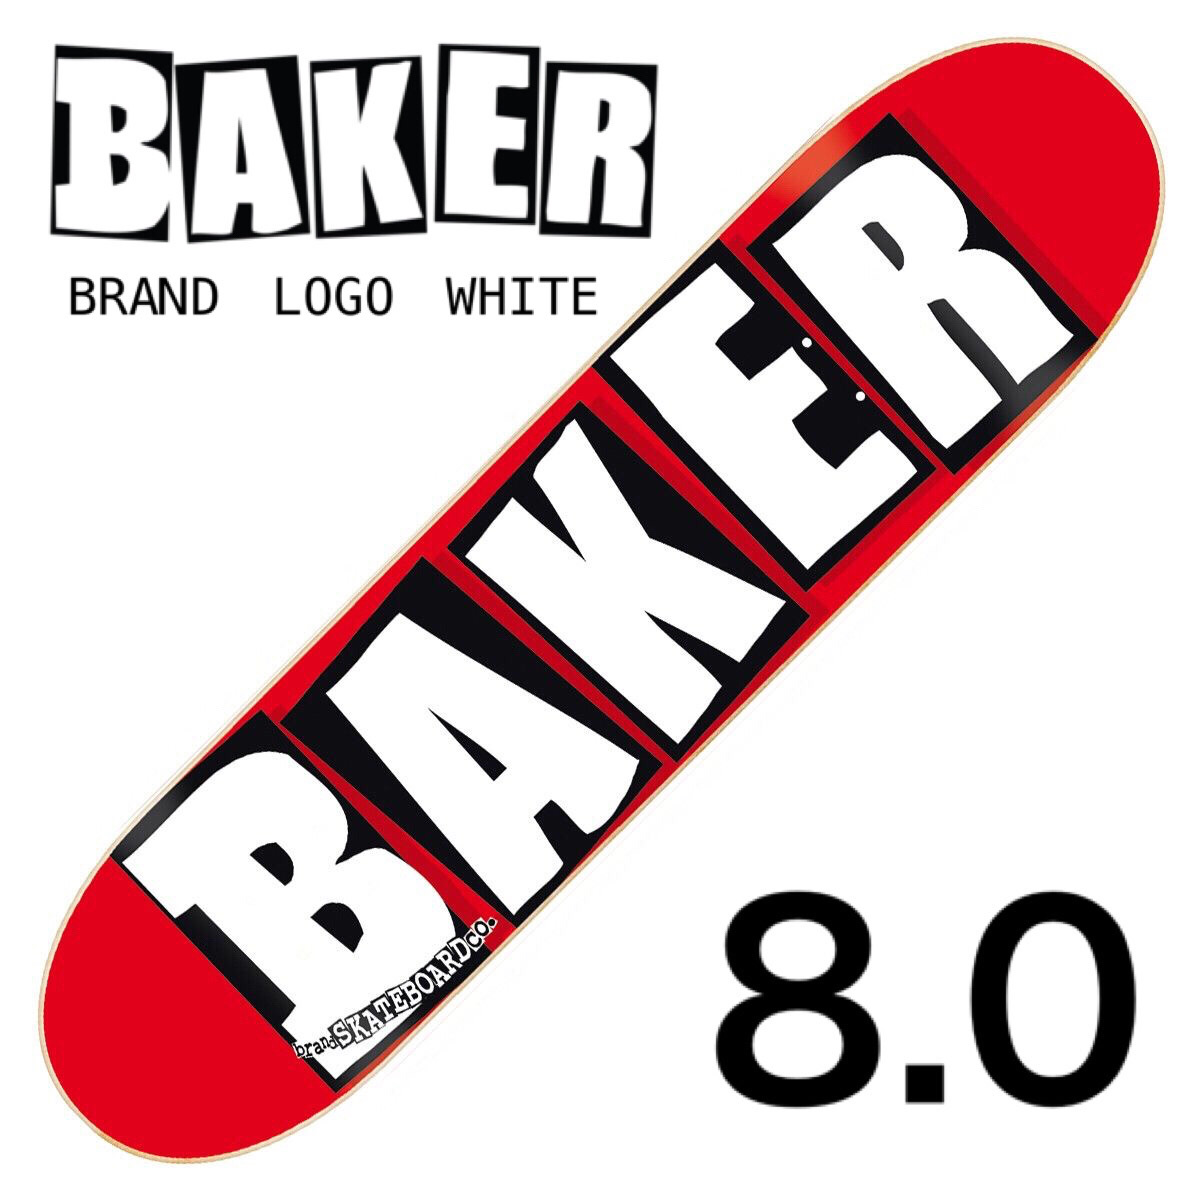 楽天市場 Baker Brand Logo White Deck 8 0 ベイカー ブランド ロゴ ホワイト デッキスケートボード スケボー 赤 メローコンケーブ ストリート パーク アール ランプ 初心者 レディース なみのりこぞう 楽天市場店